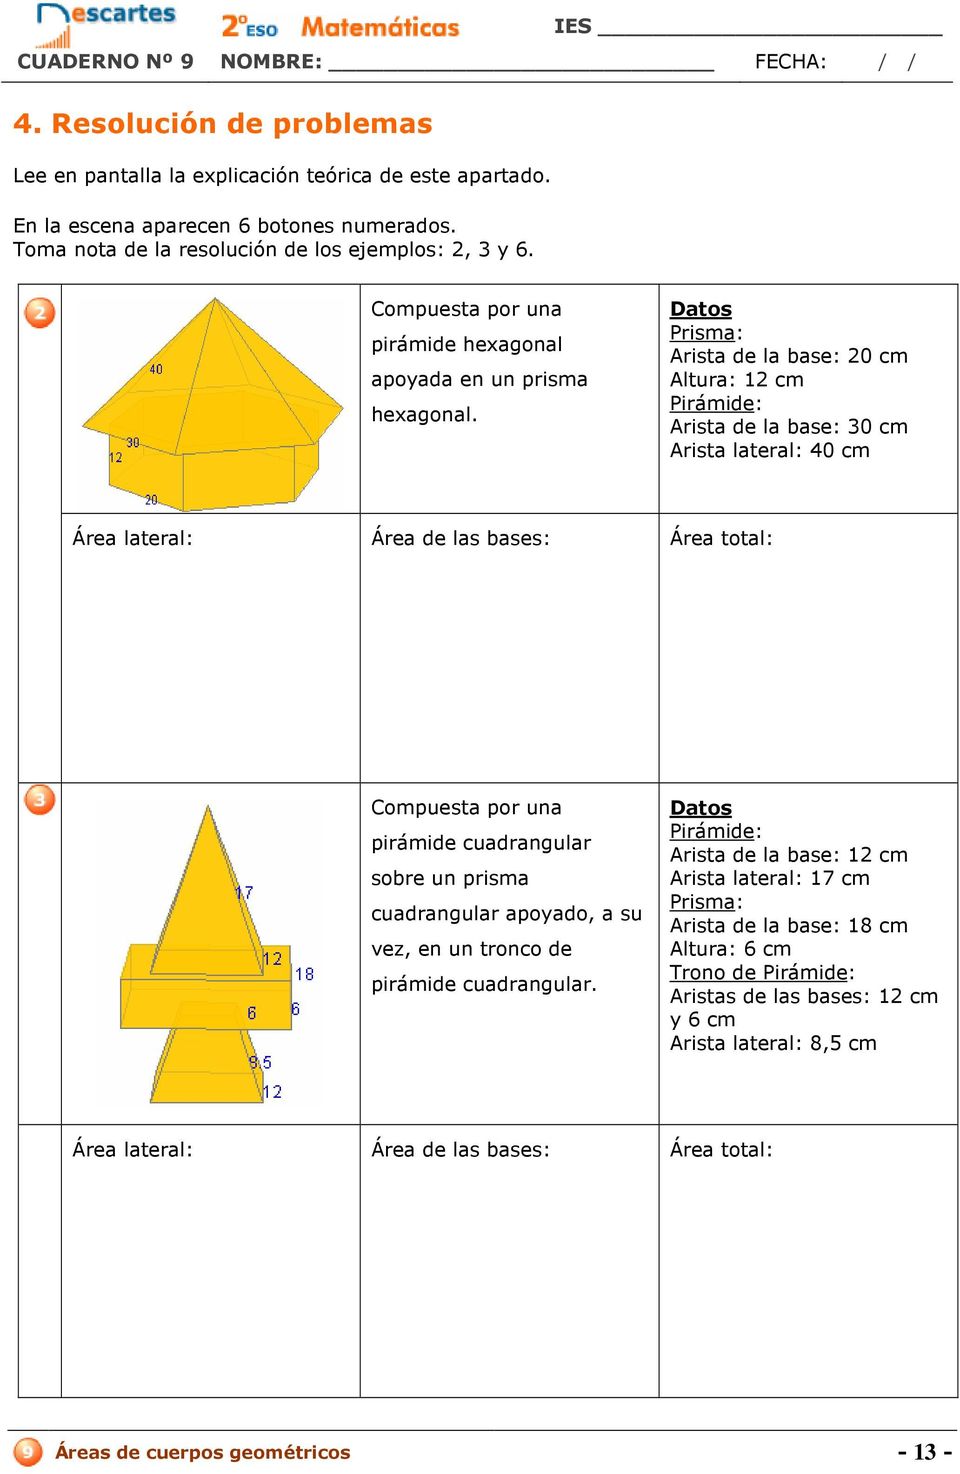 Datos Prisma: Arista de la base: 20 cm Altura: 12 cm Pirámide: Arista de la base: 30 cm Arista lateral: 40 cm Compuesta por una pirámide cuadrangular sobre un prisma